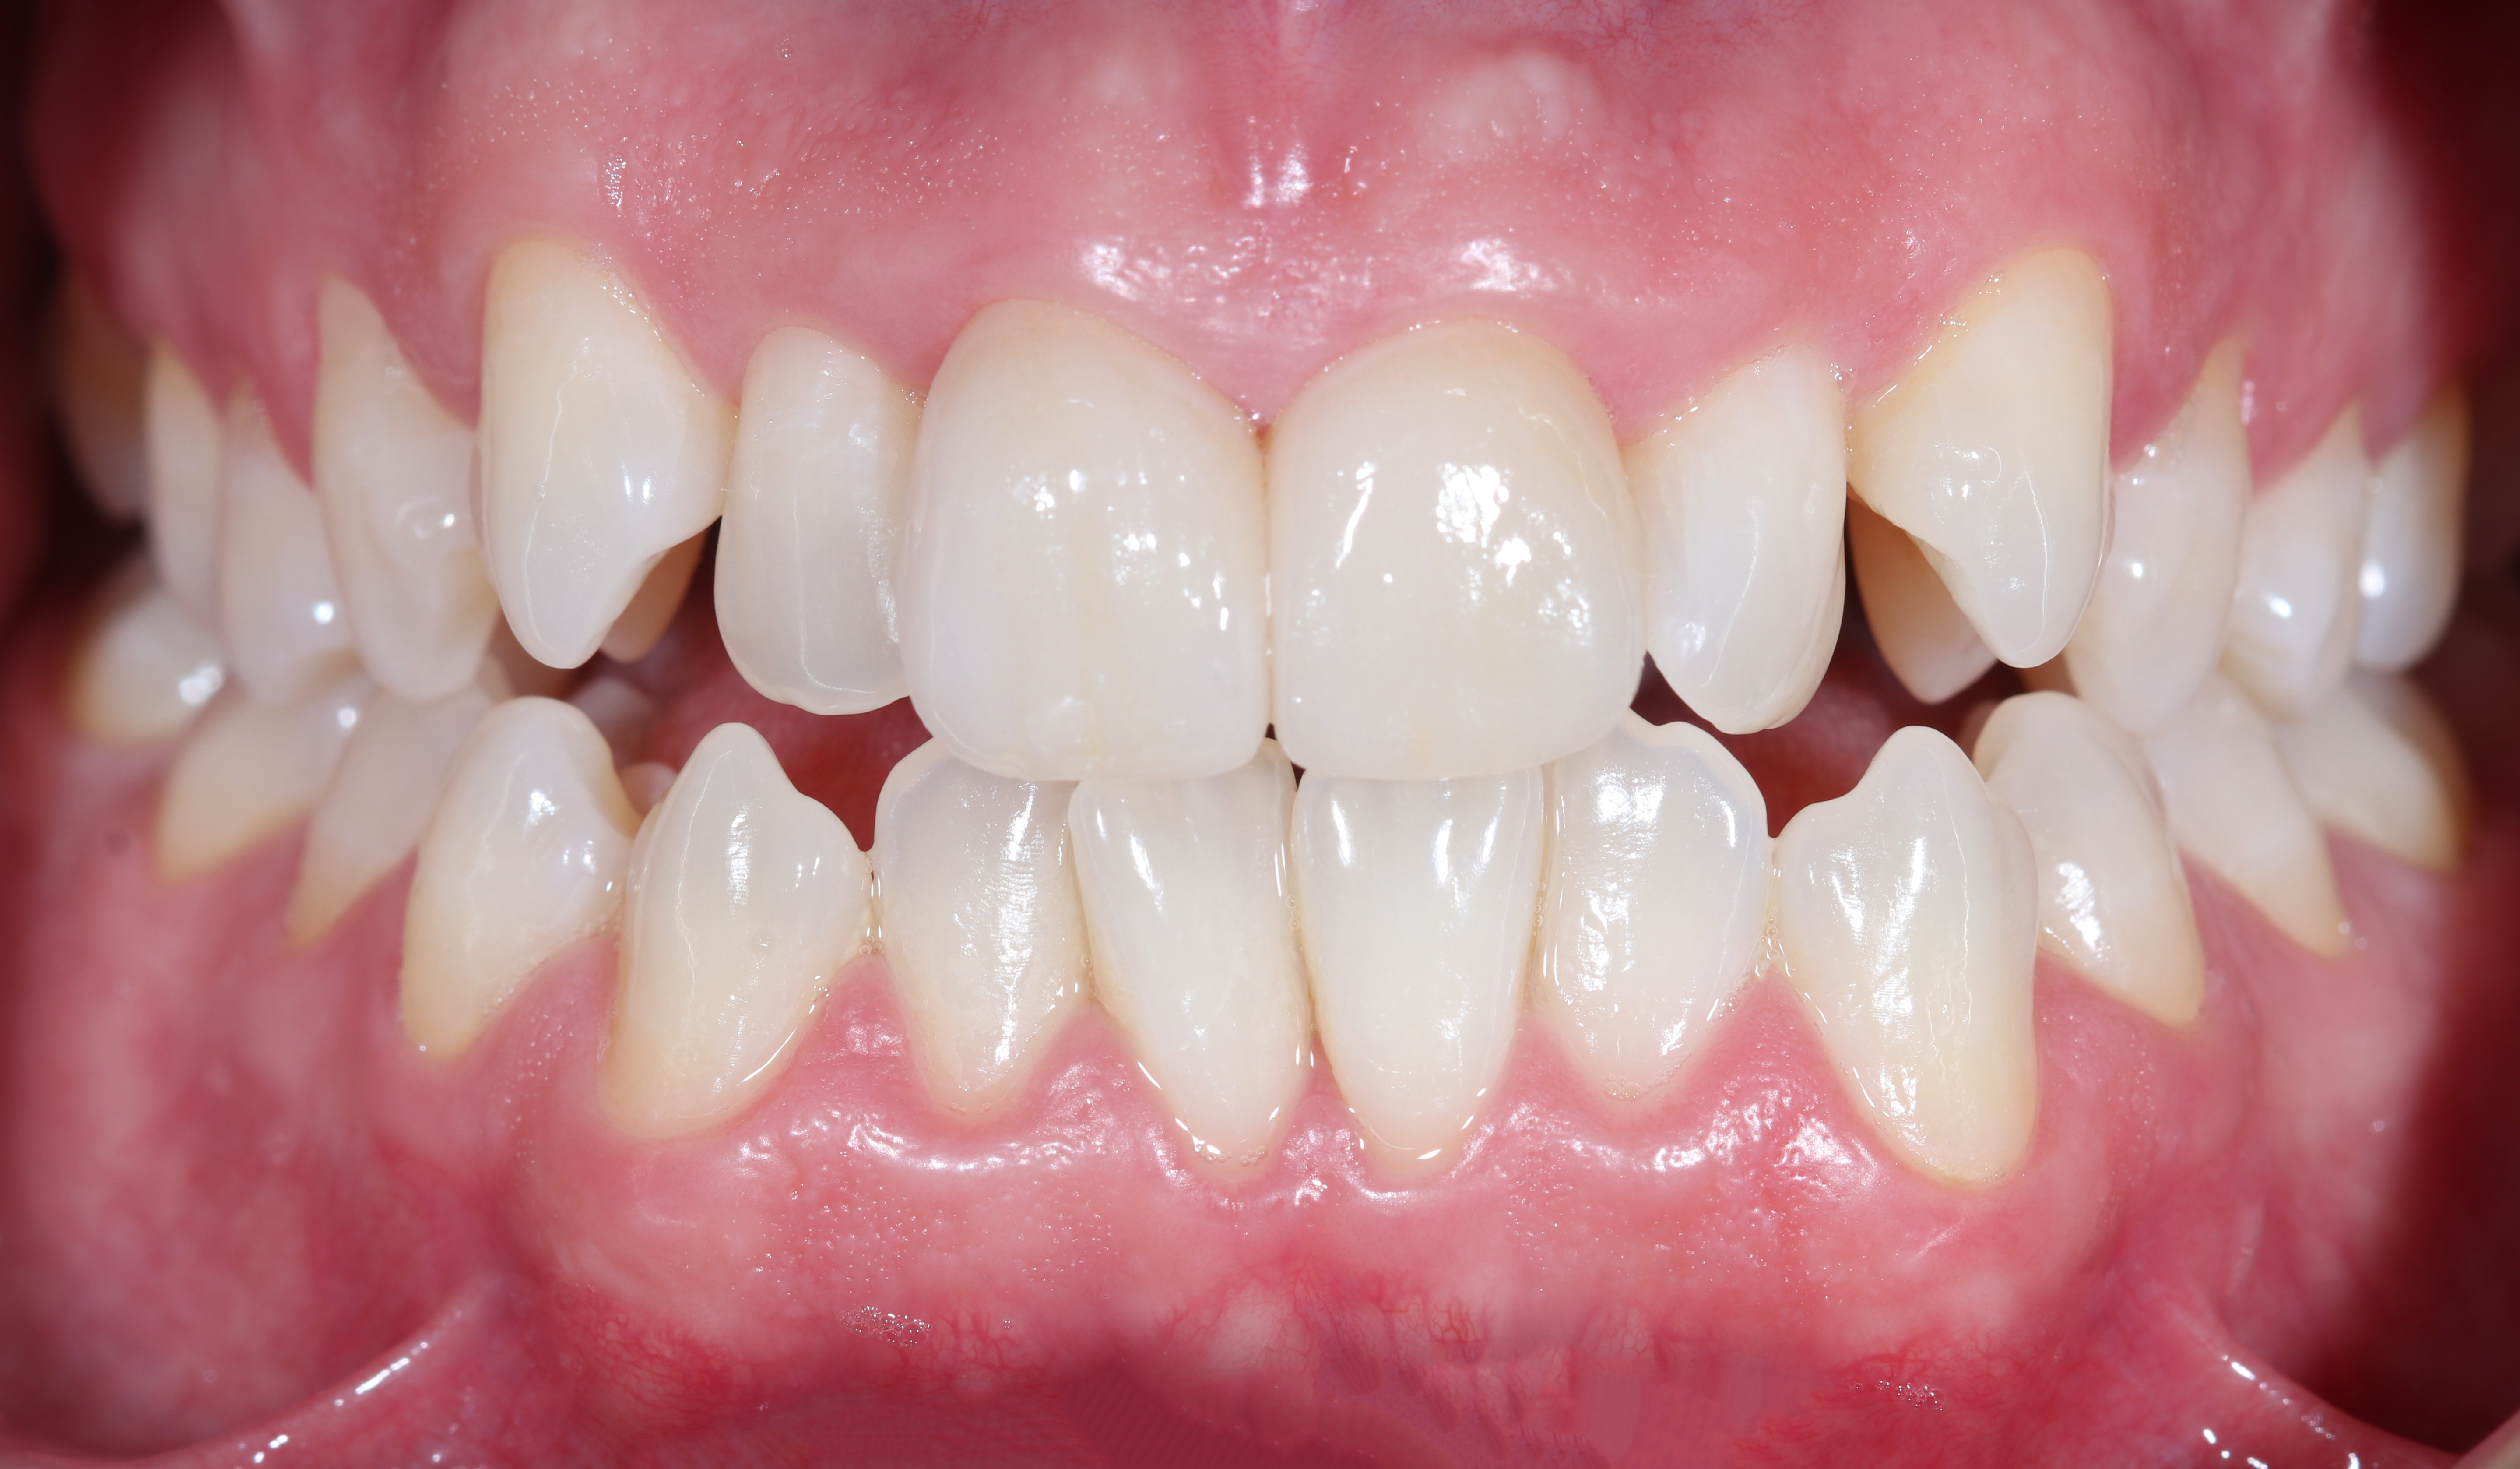 Τελική κατάσταση - Πρόσθια άποψη με τα δόντια σε σύγκλειση